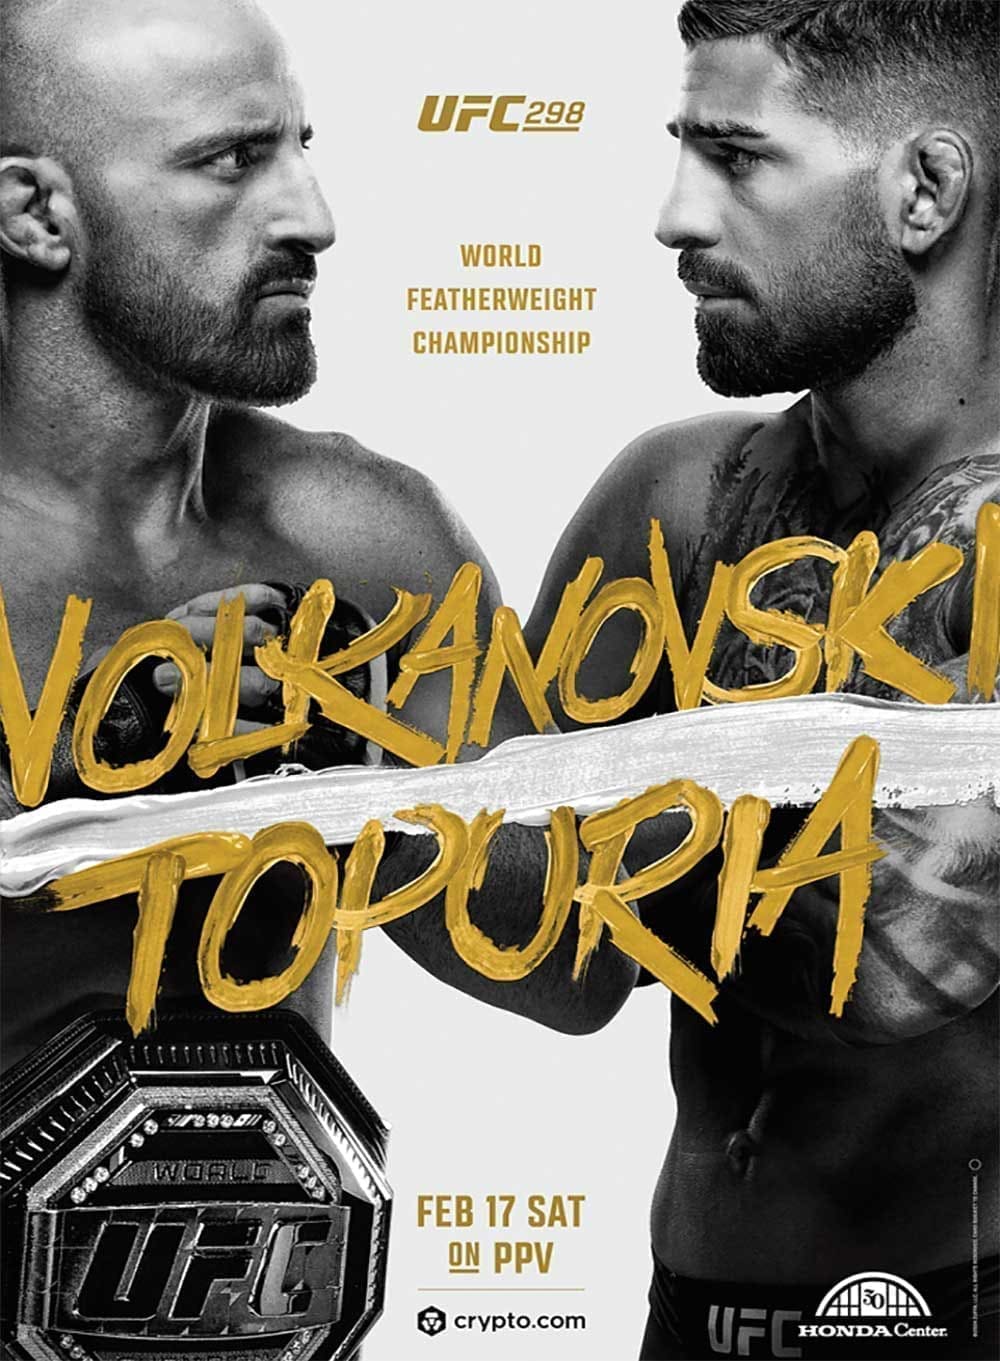 UFC 298: Волкановски - Топурия дата проведения, кард, участники и результаты